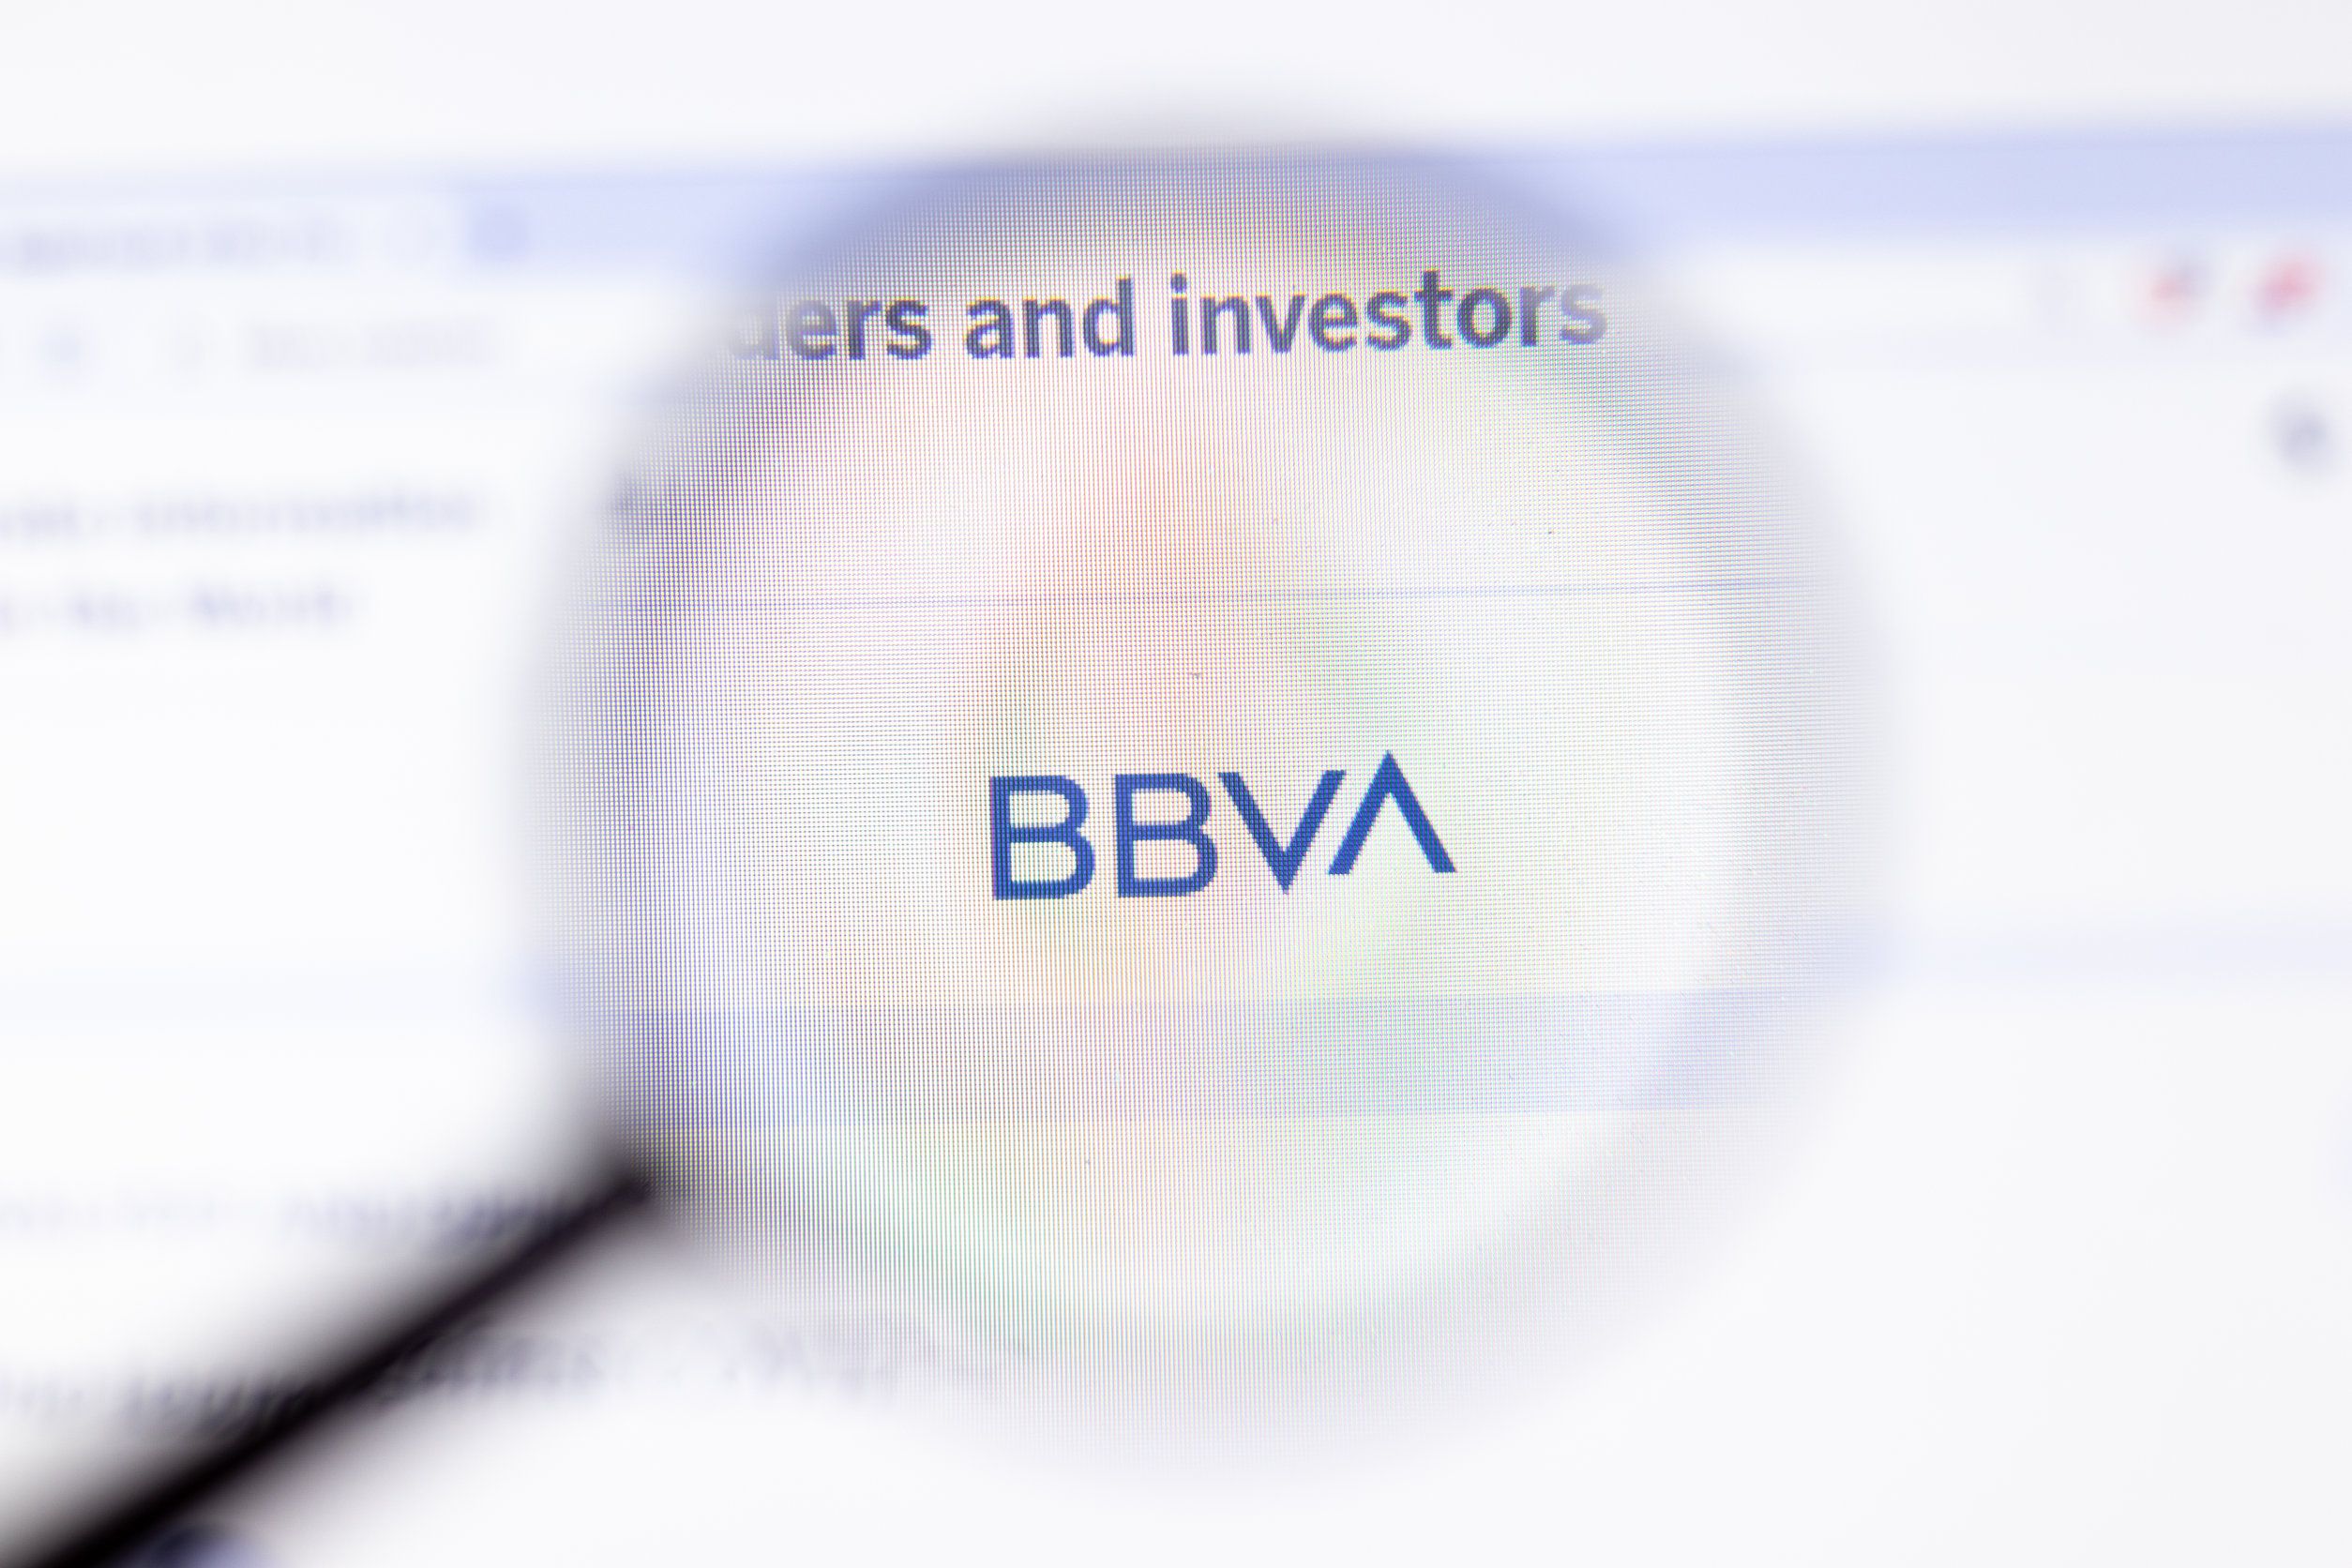 Una campaña de malware apunta a grandes bancos españoles como BBVA o Sabadell